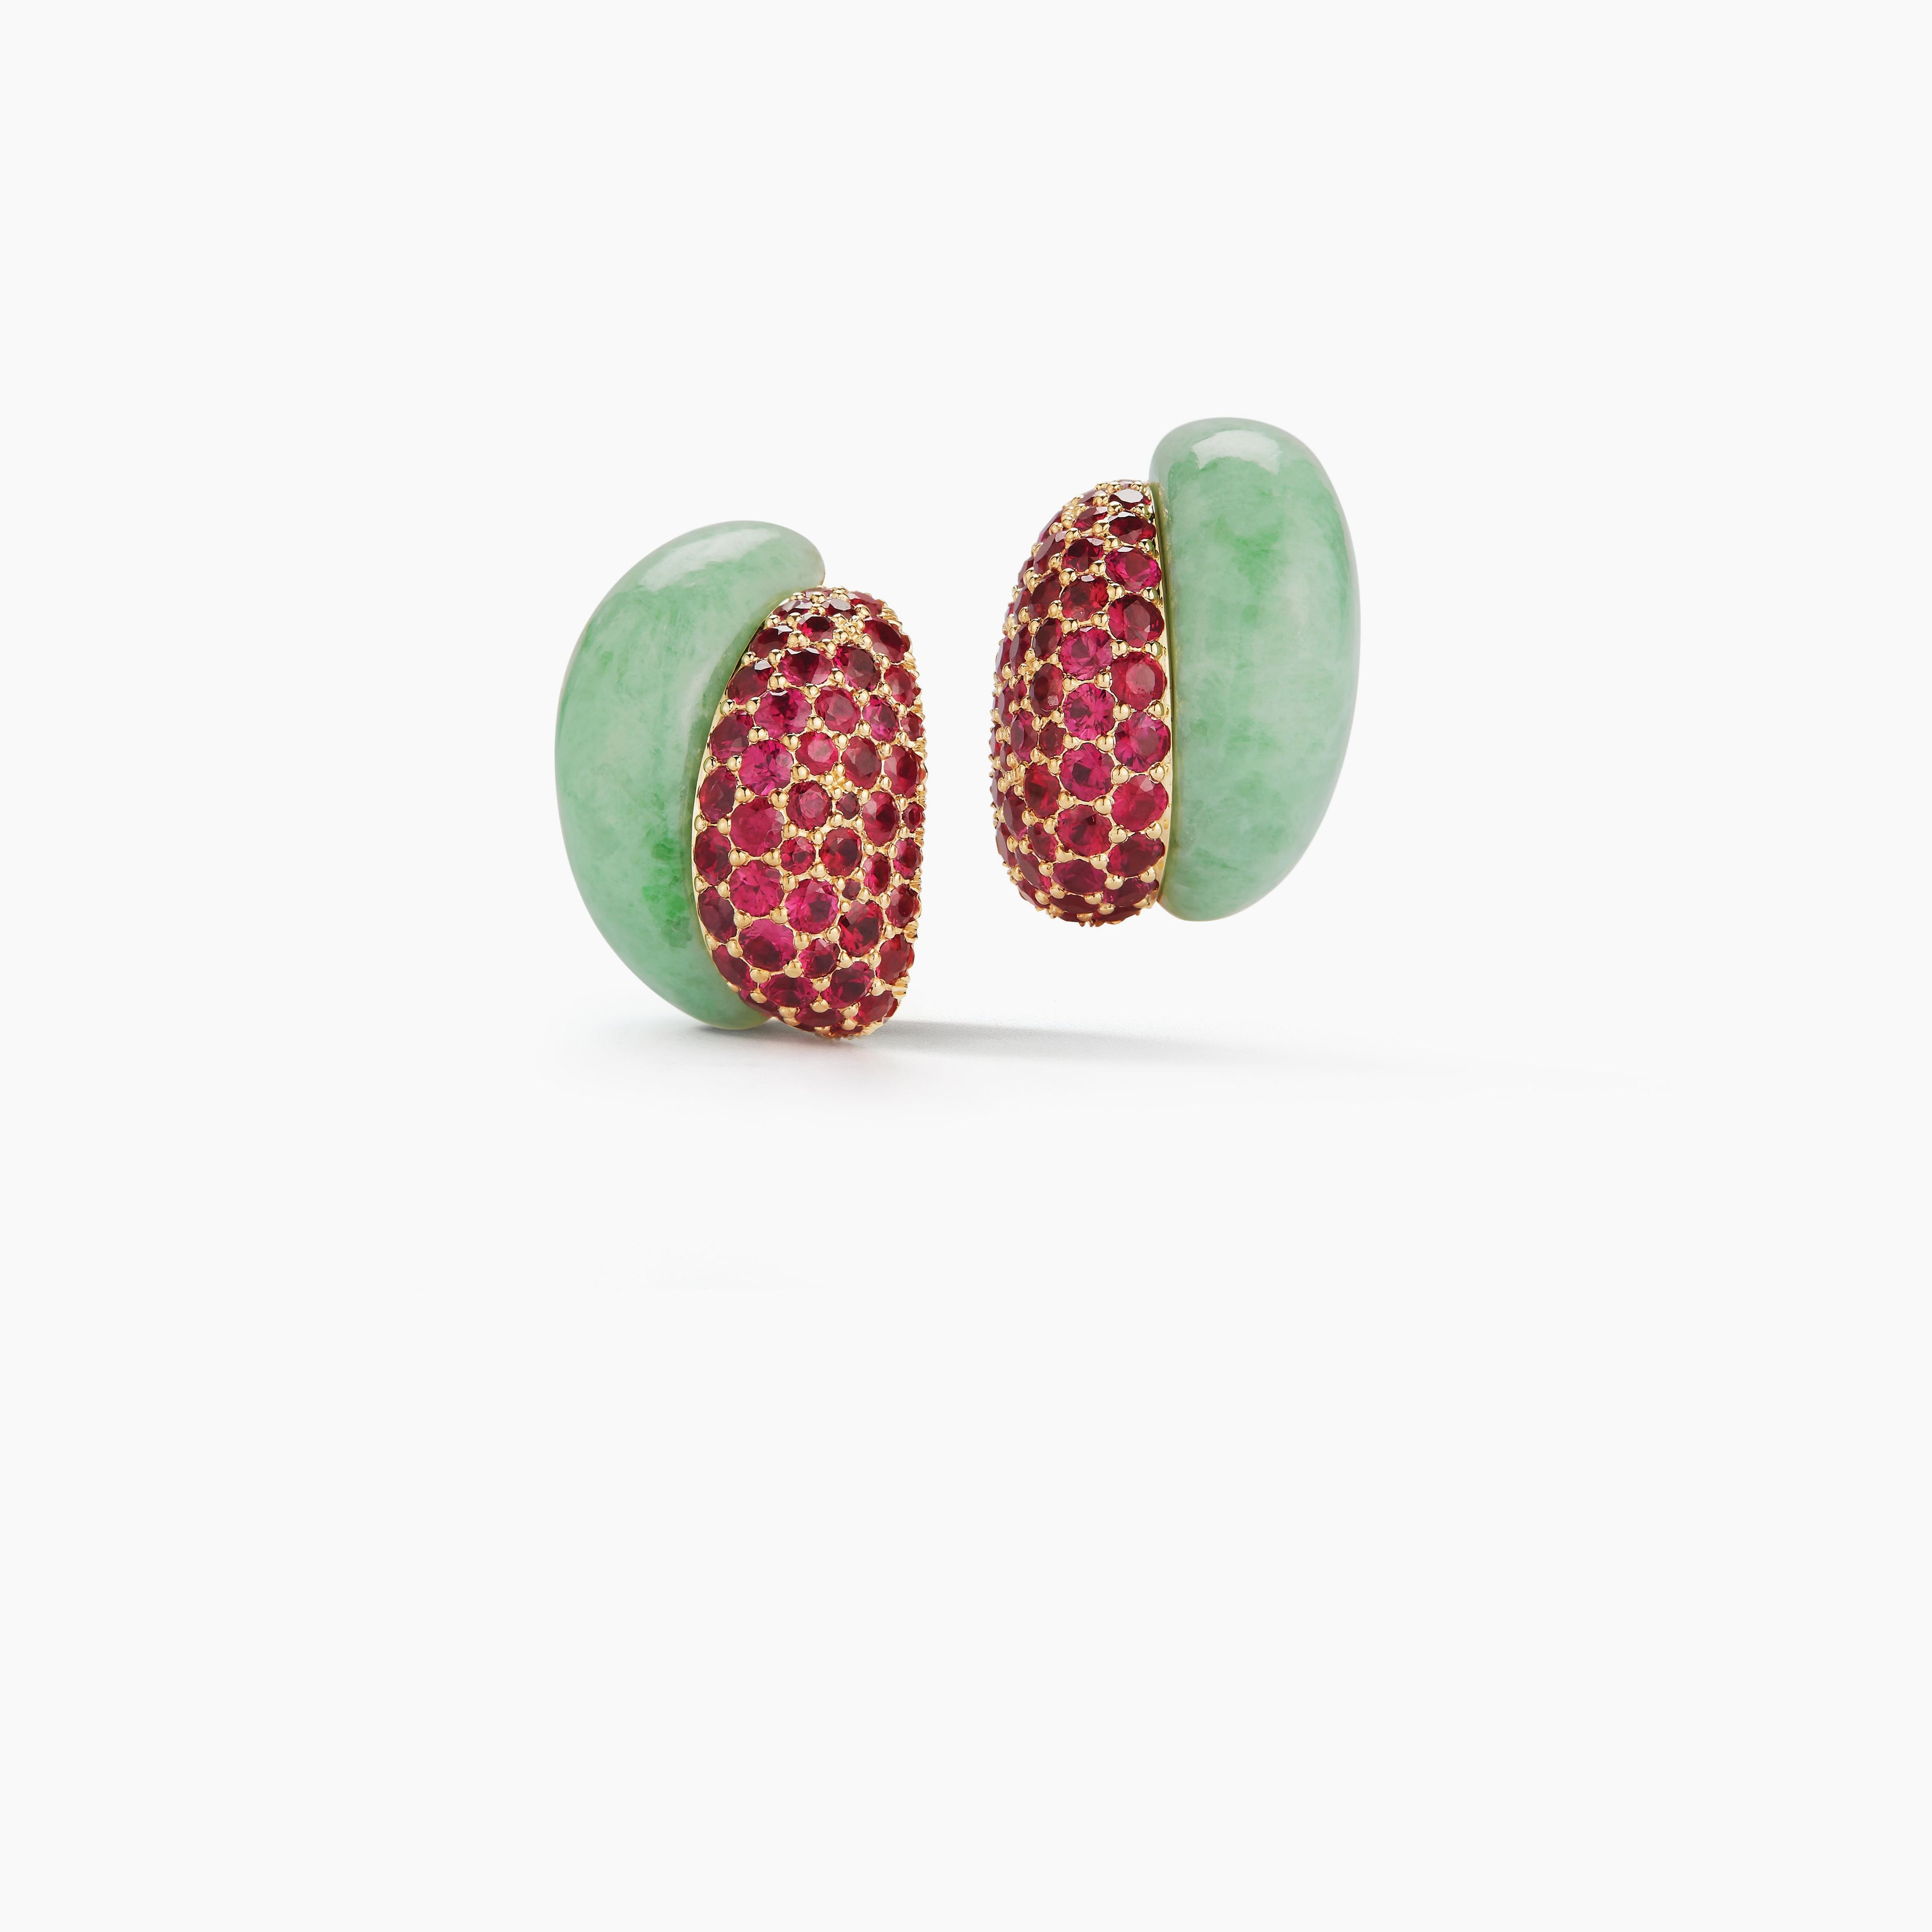 Silhouette Earrings in Green Jade & Ruby